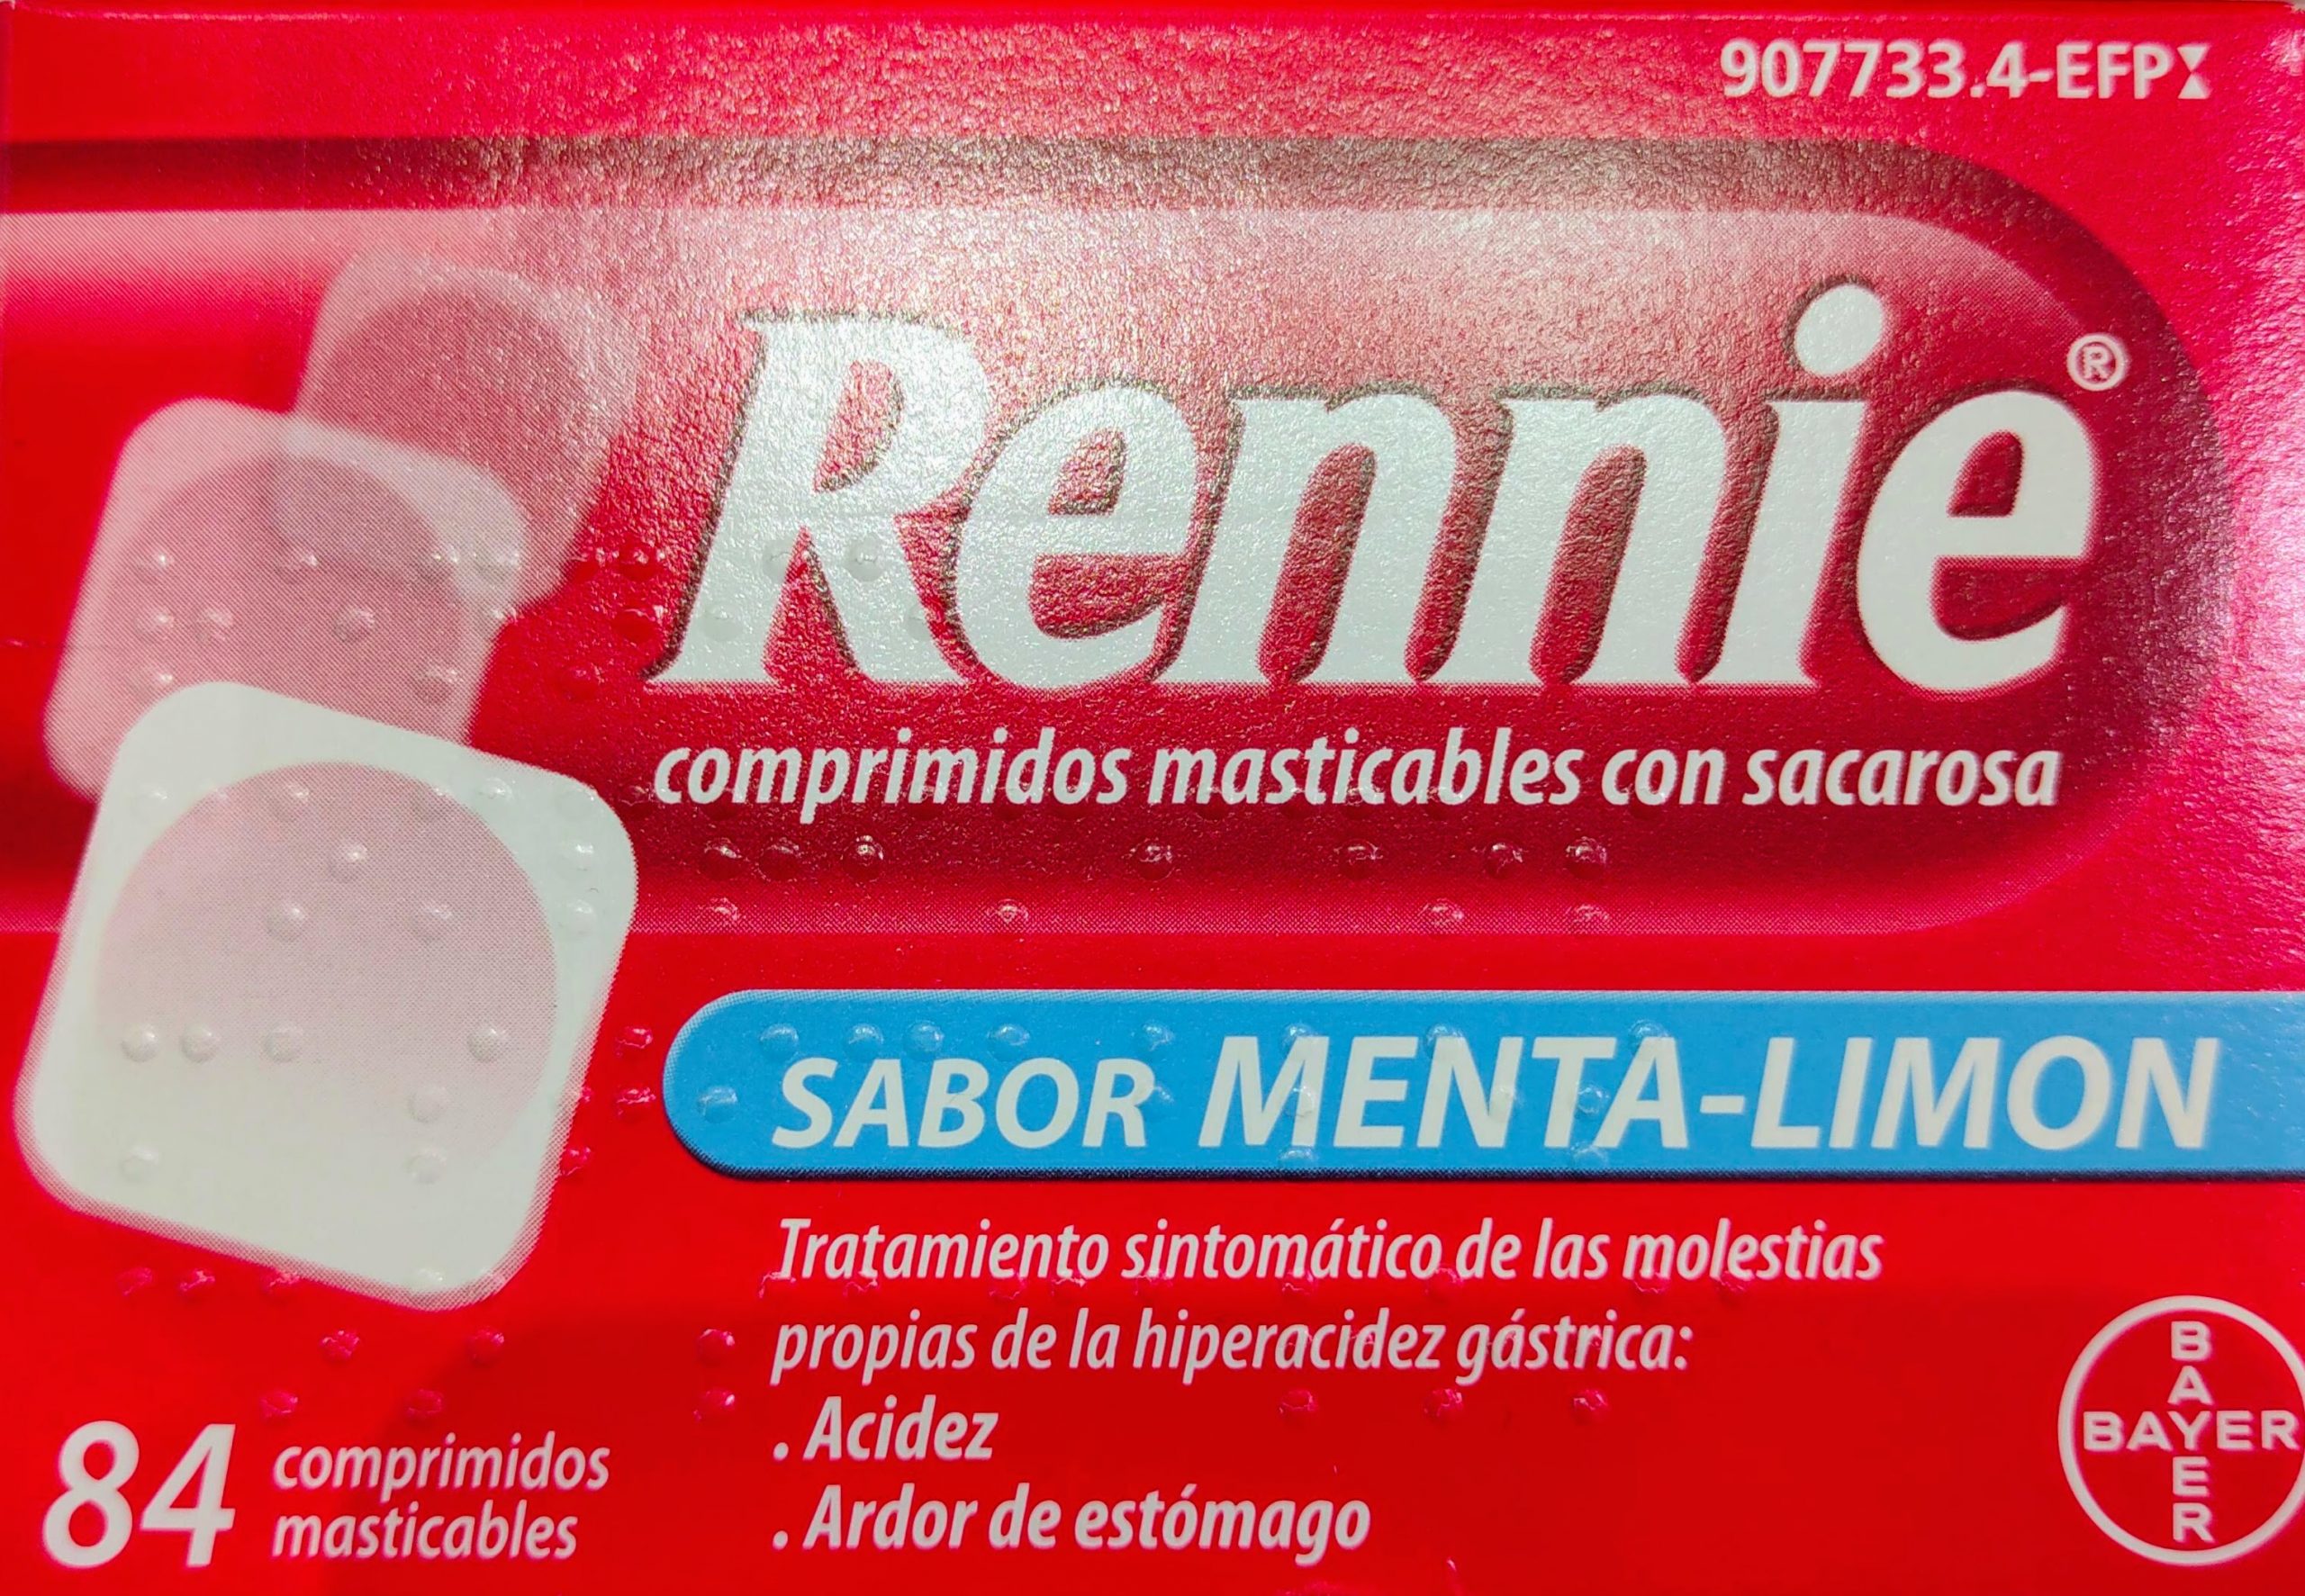 Para solventar el ardor de estómago y pesadez utilice el medicamento de Rennie. Formato de 48 comprimidos con Sacarina a un excelente precio